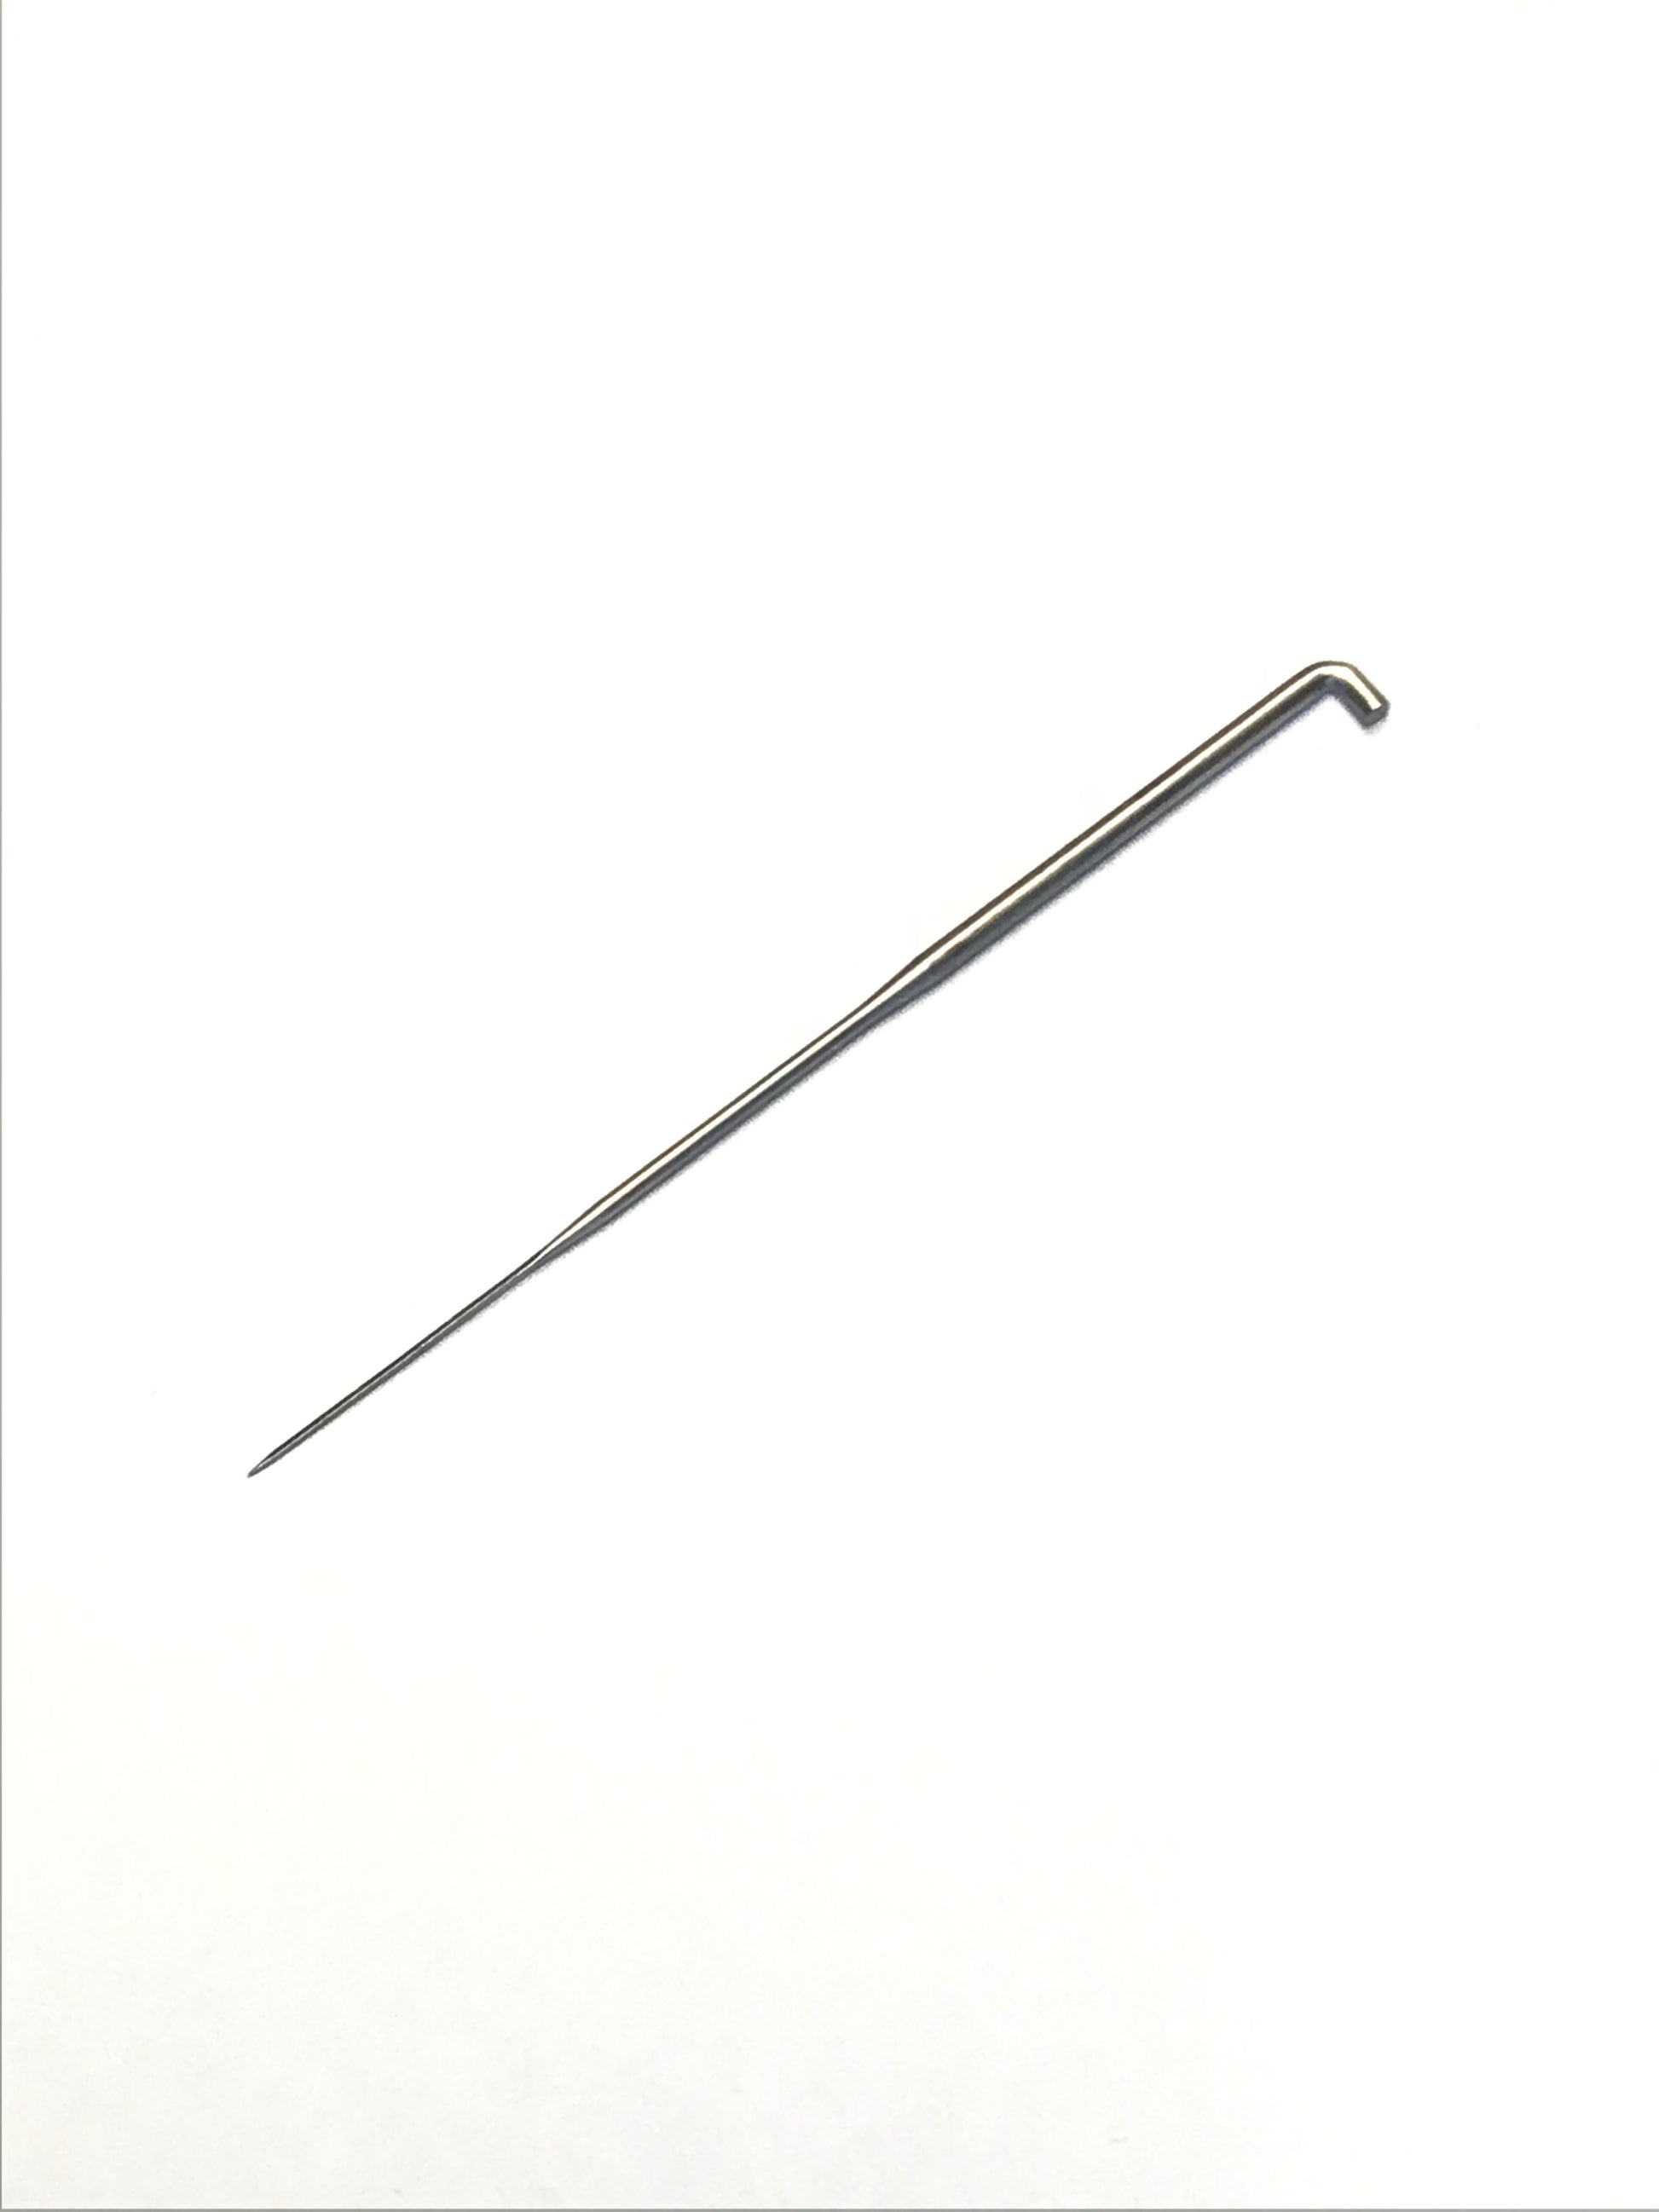 207 - Single Hair Punching Needle